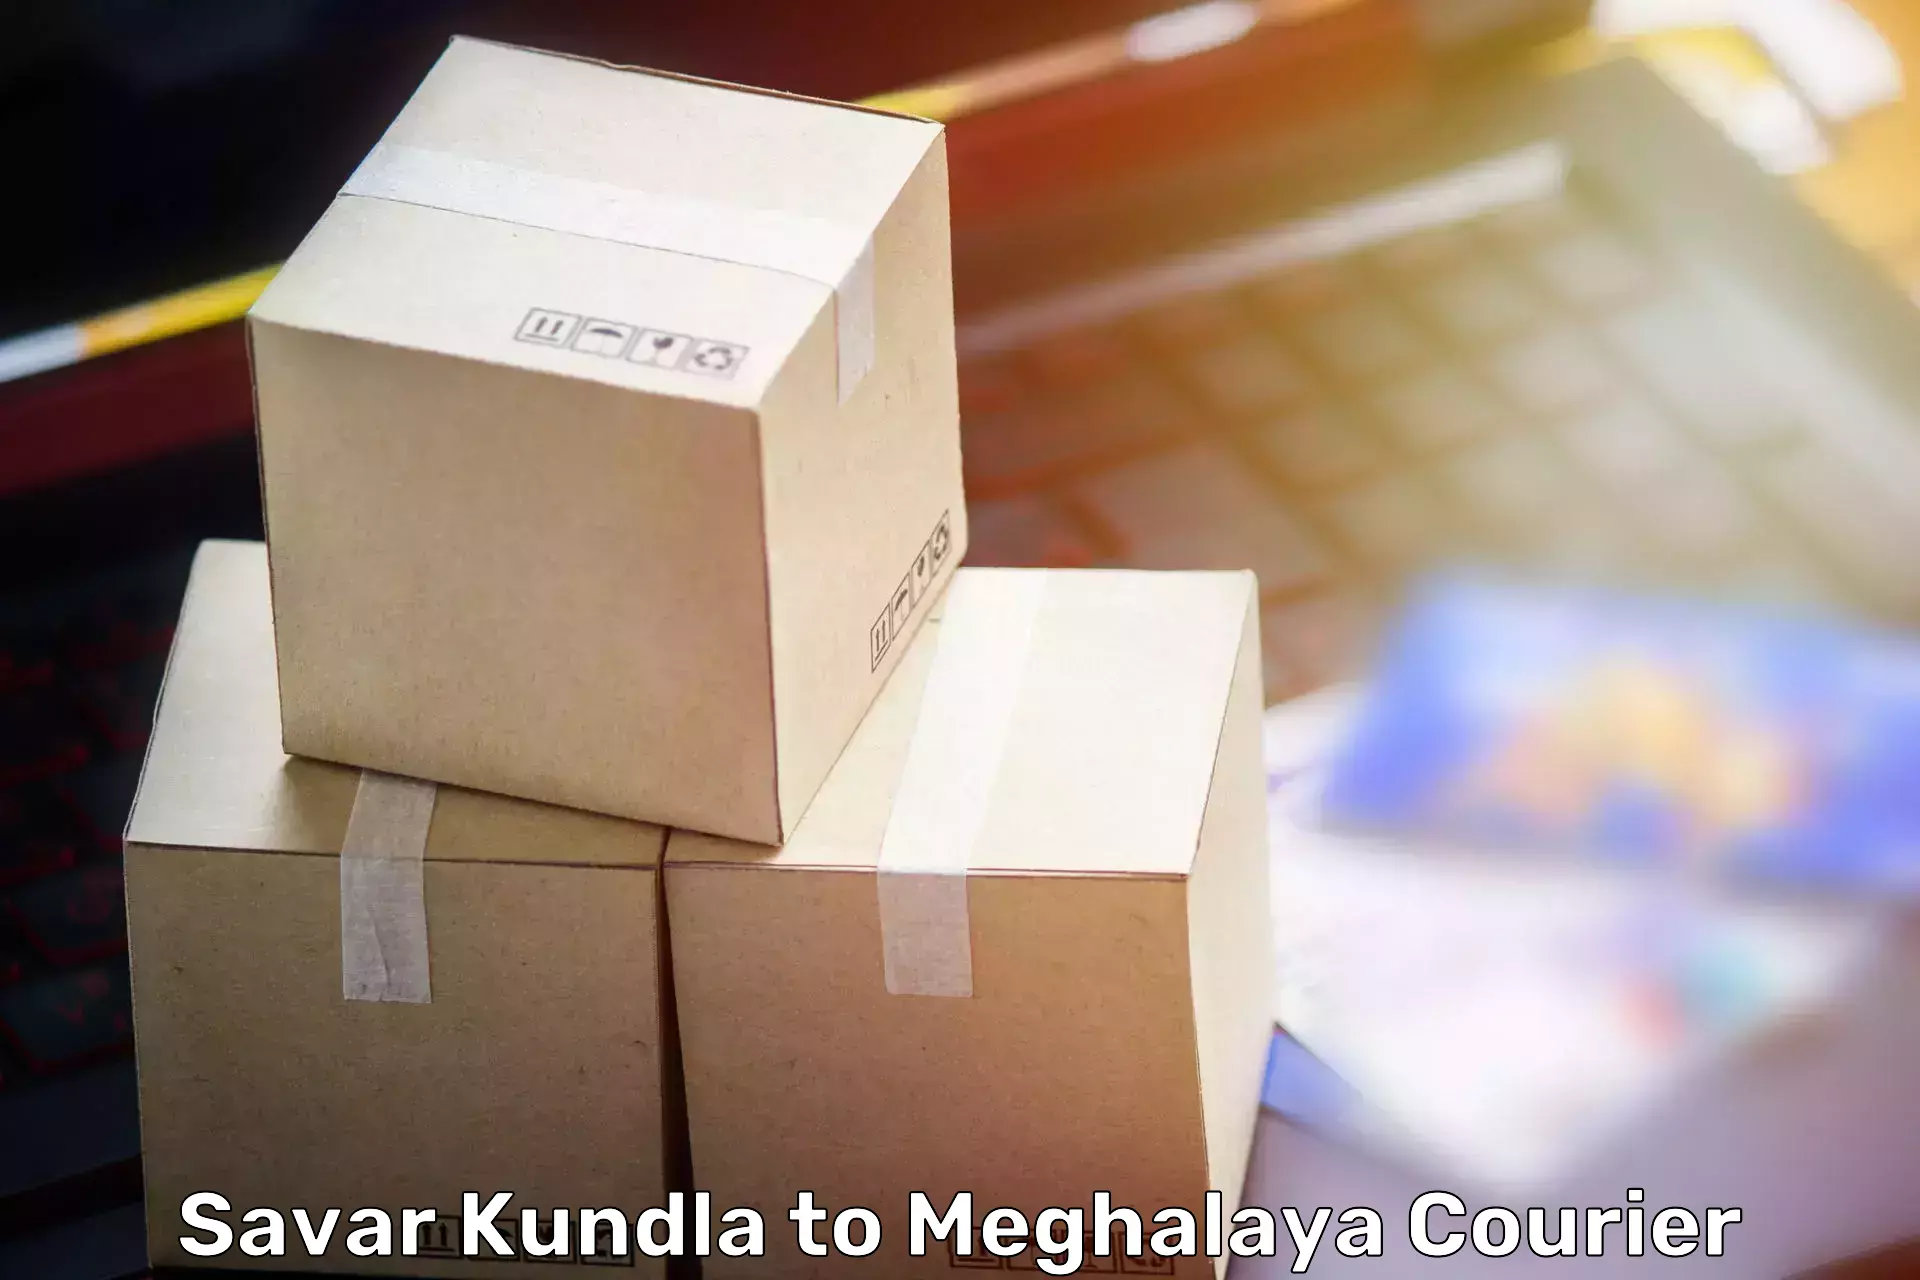 Furniture delivery service Savar Kundla to Shillong